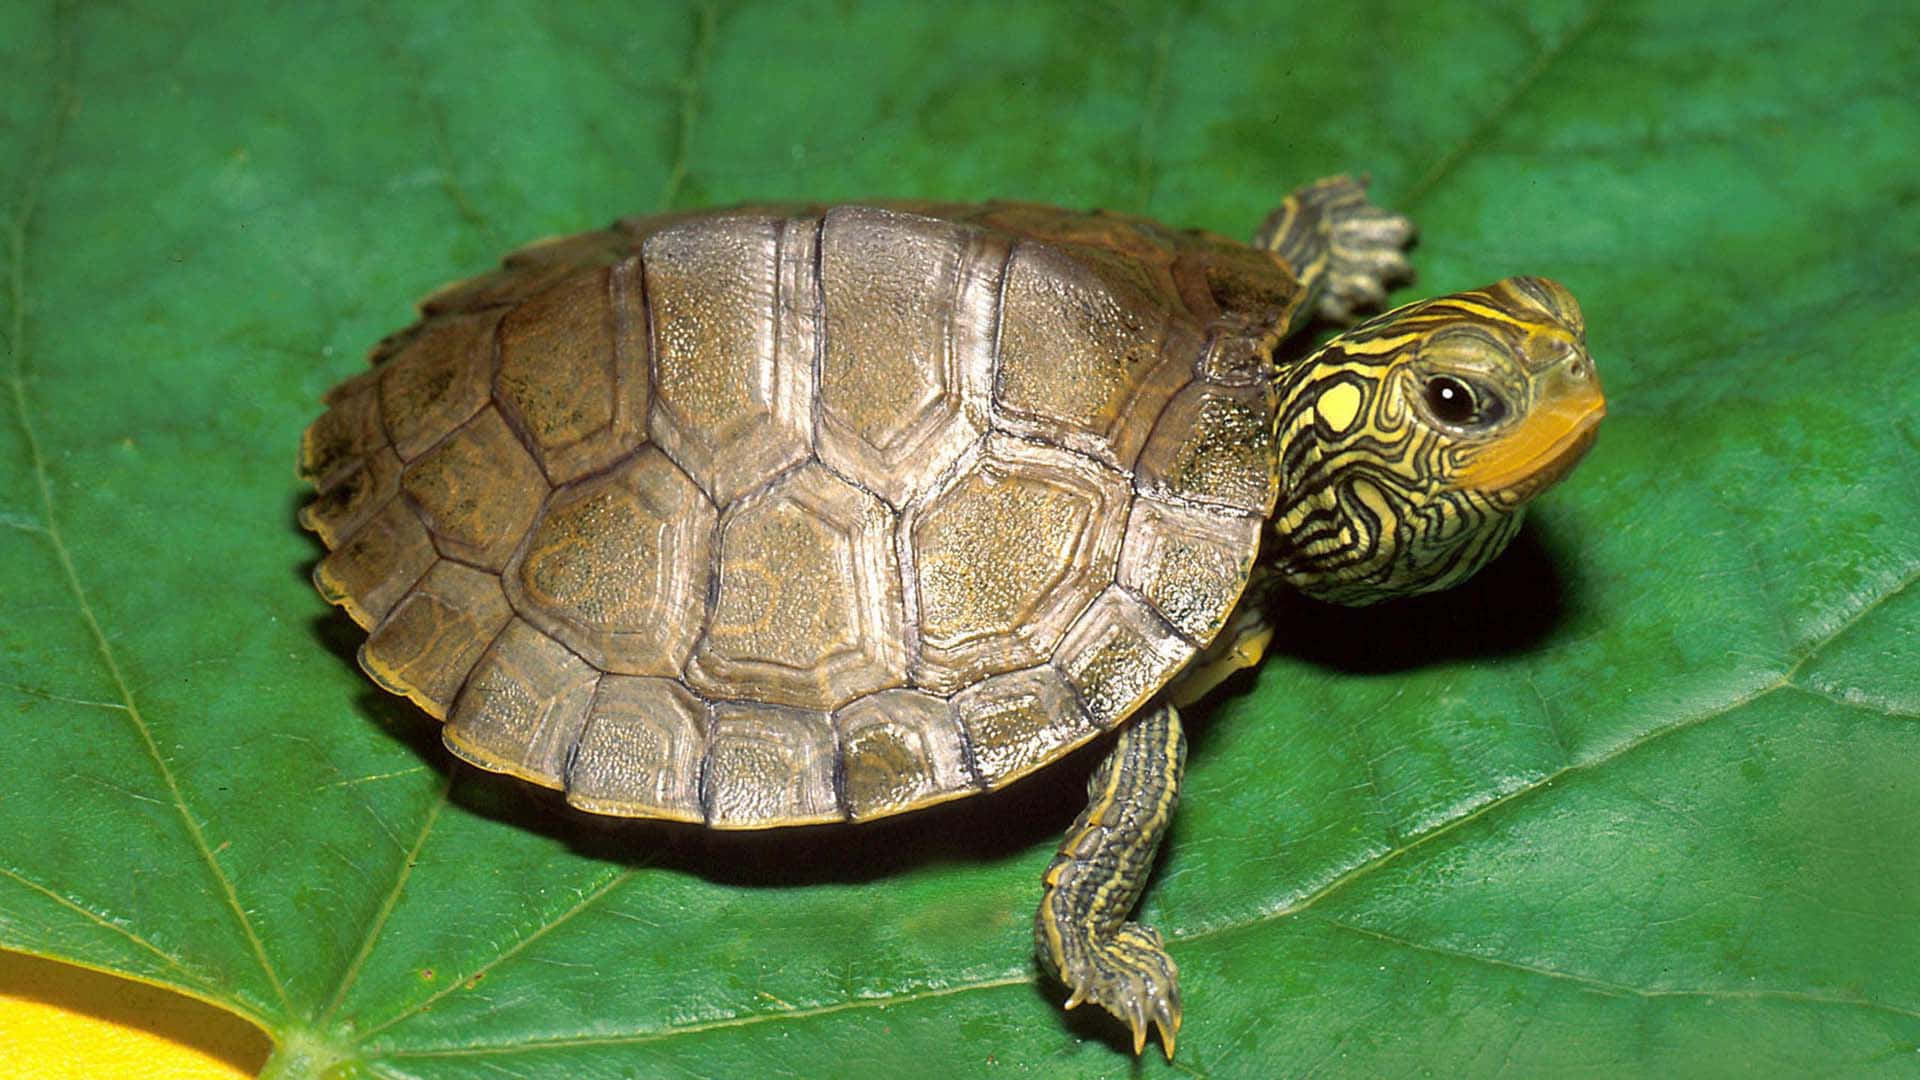 Entdeckedie Welt Mit Dieser Niedlichen Schildkröte!